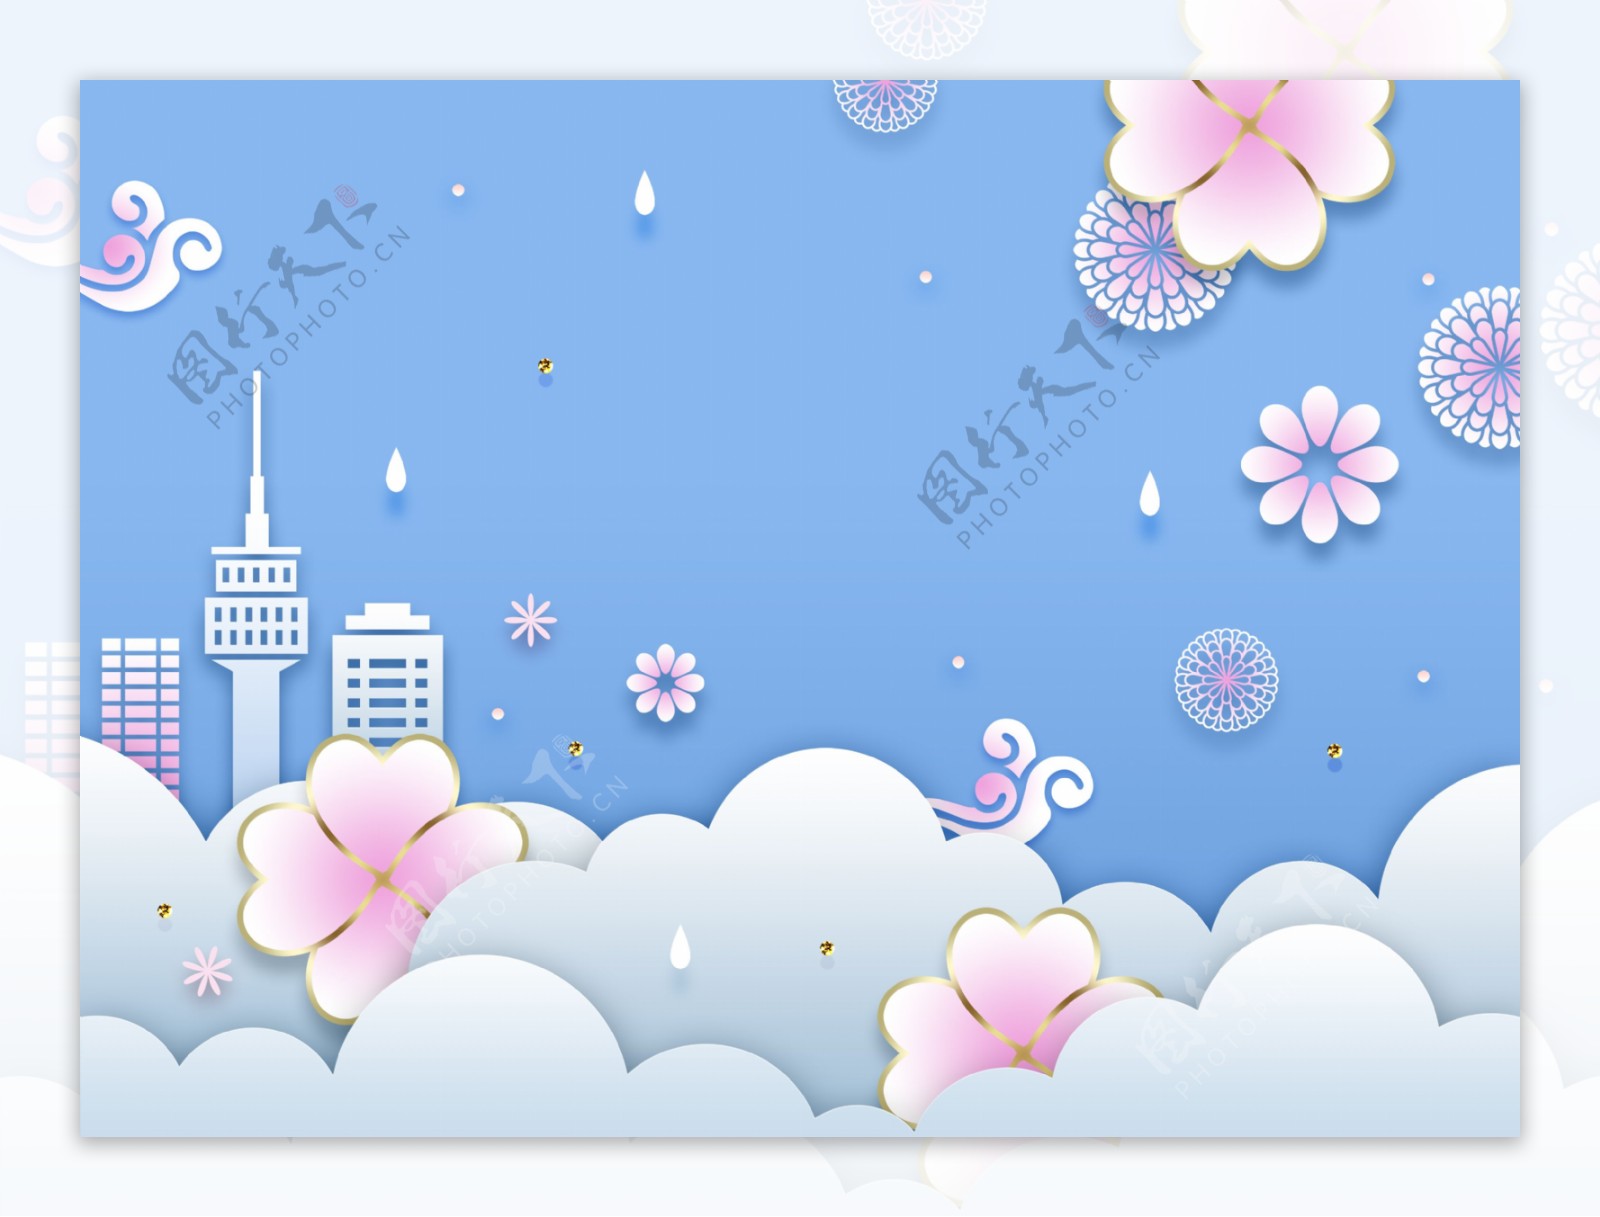 清新韩式春天气息卡通立体花朵建筑背景